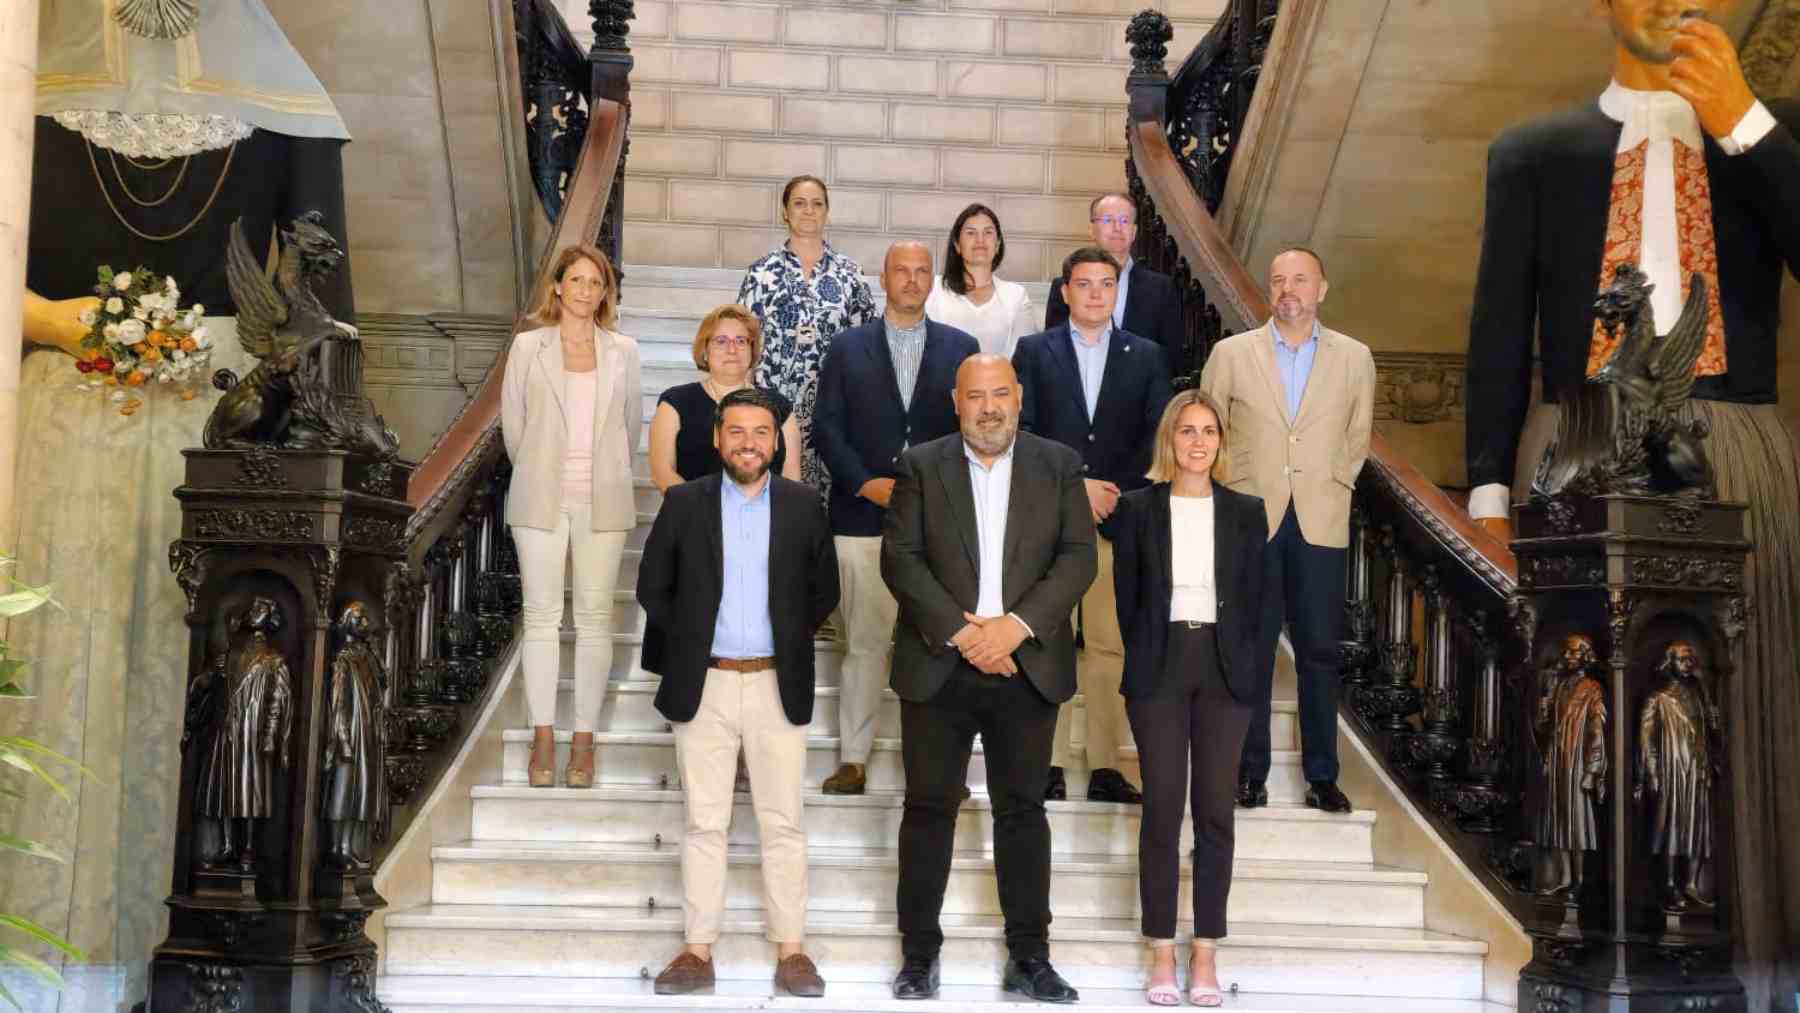 Imagen de los 11 concejales del PP en el Ayuntamiento de Palma, con el alcalde Martínez al frente.